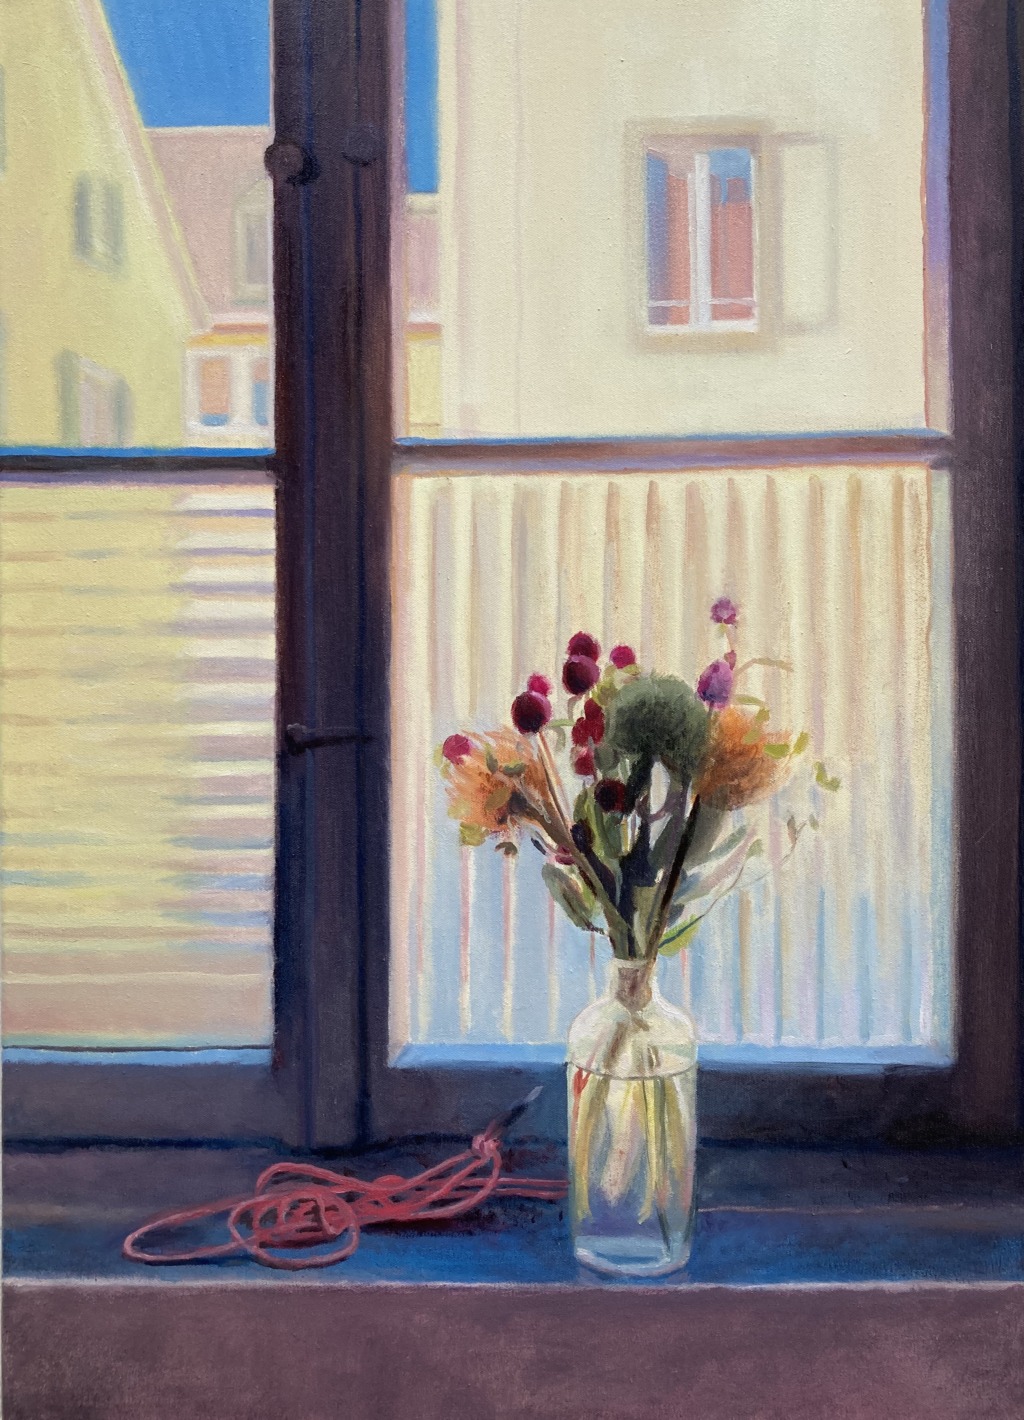 Andrea Muheim, Besuch von Janet und Sara, 2021
Oil on canvas
70 x 50 cm